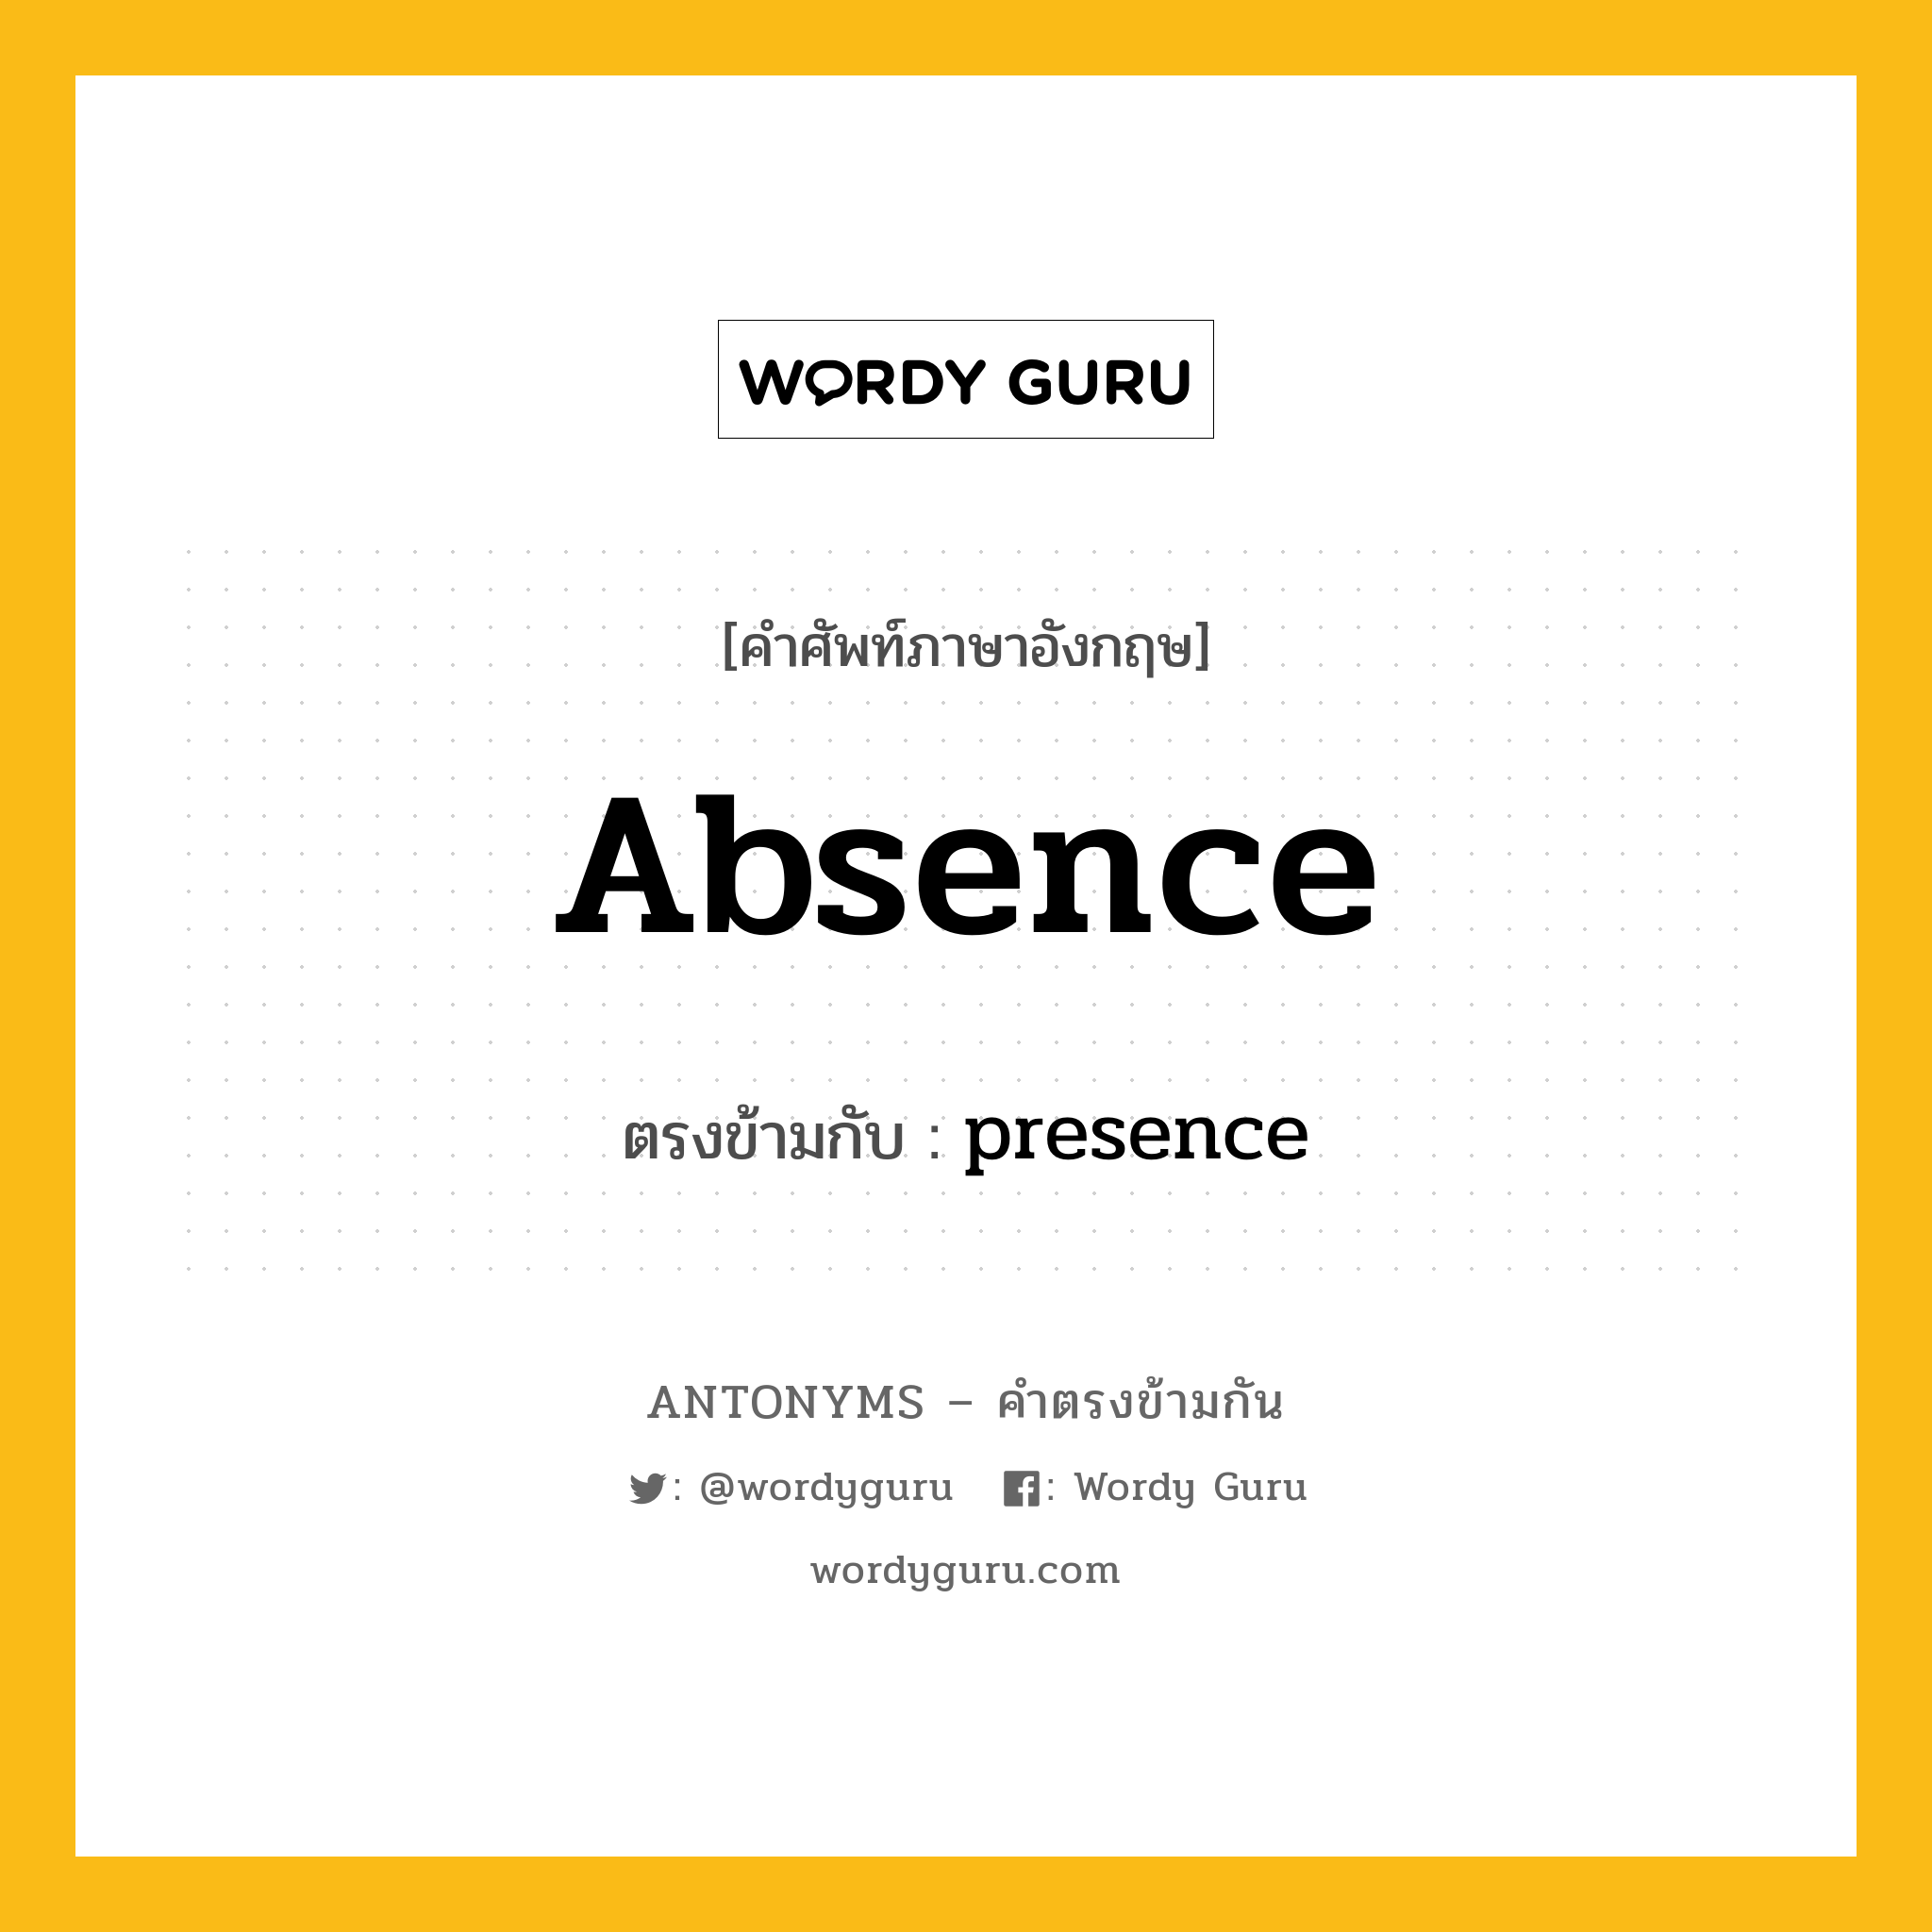 absence เป็นคำตรงข้ามกับคำไหนบ้าง?, คำศัพท์ภาษาอังกฤษ absence ตรงข้ามกับ presence หมวด presence